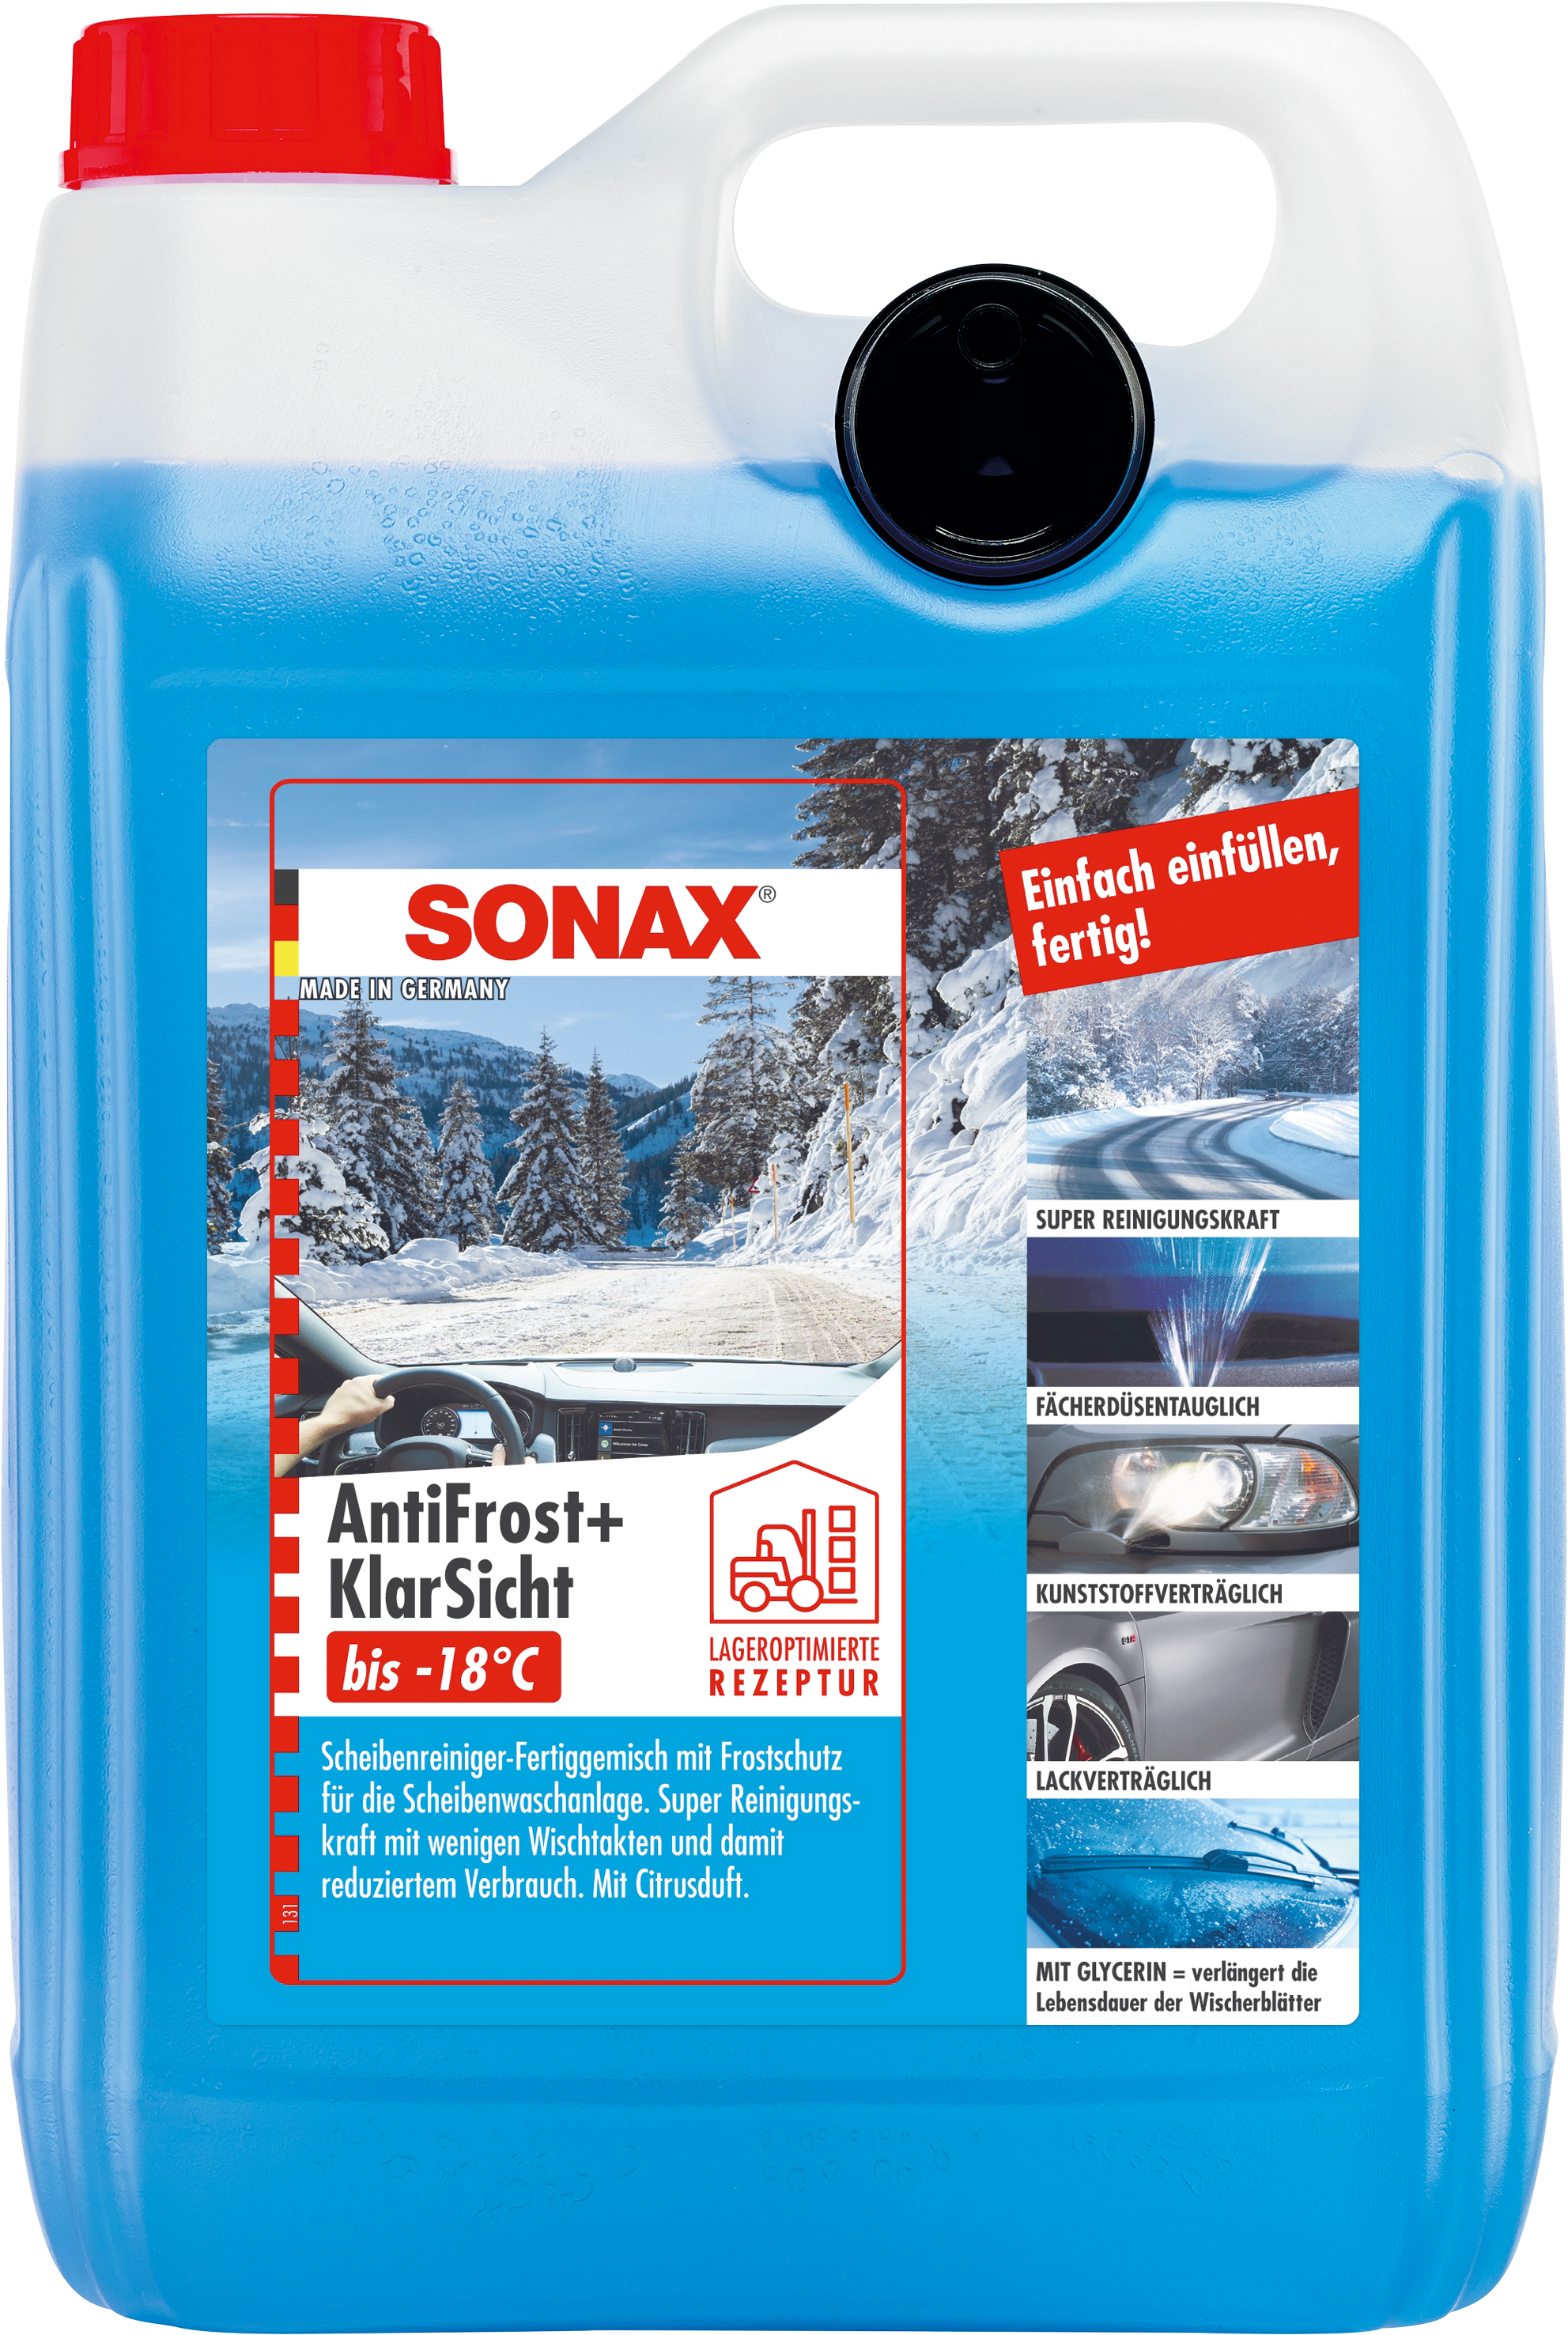 SONAX Winterprodukte - Sauber und sicher durch den Winter